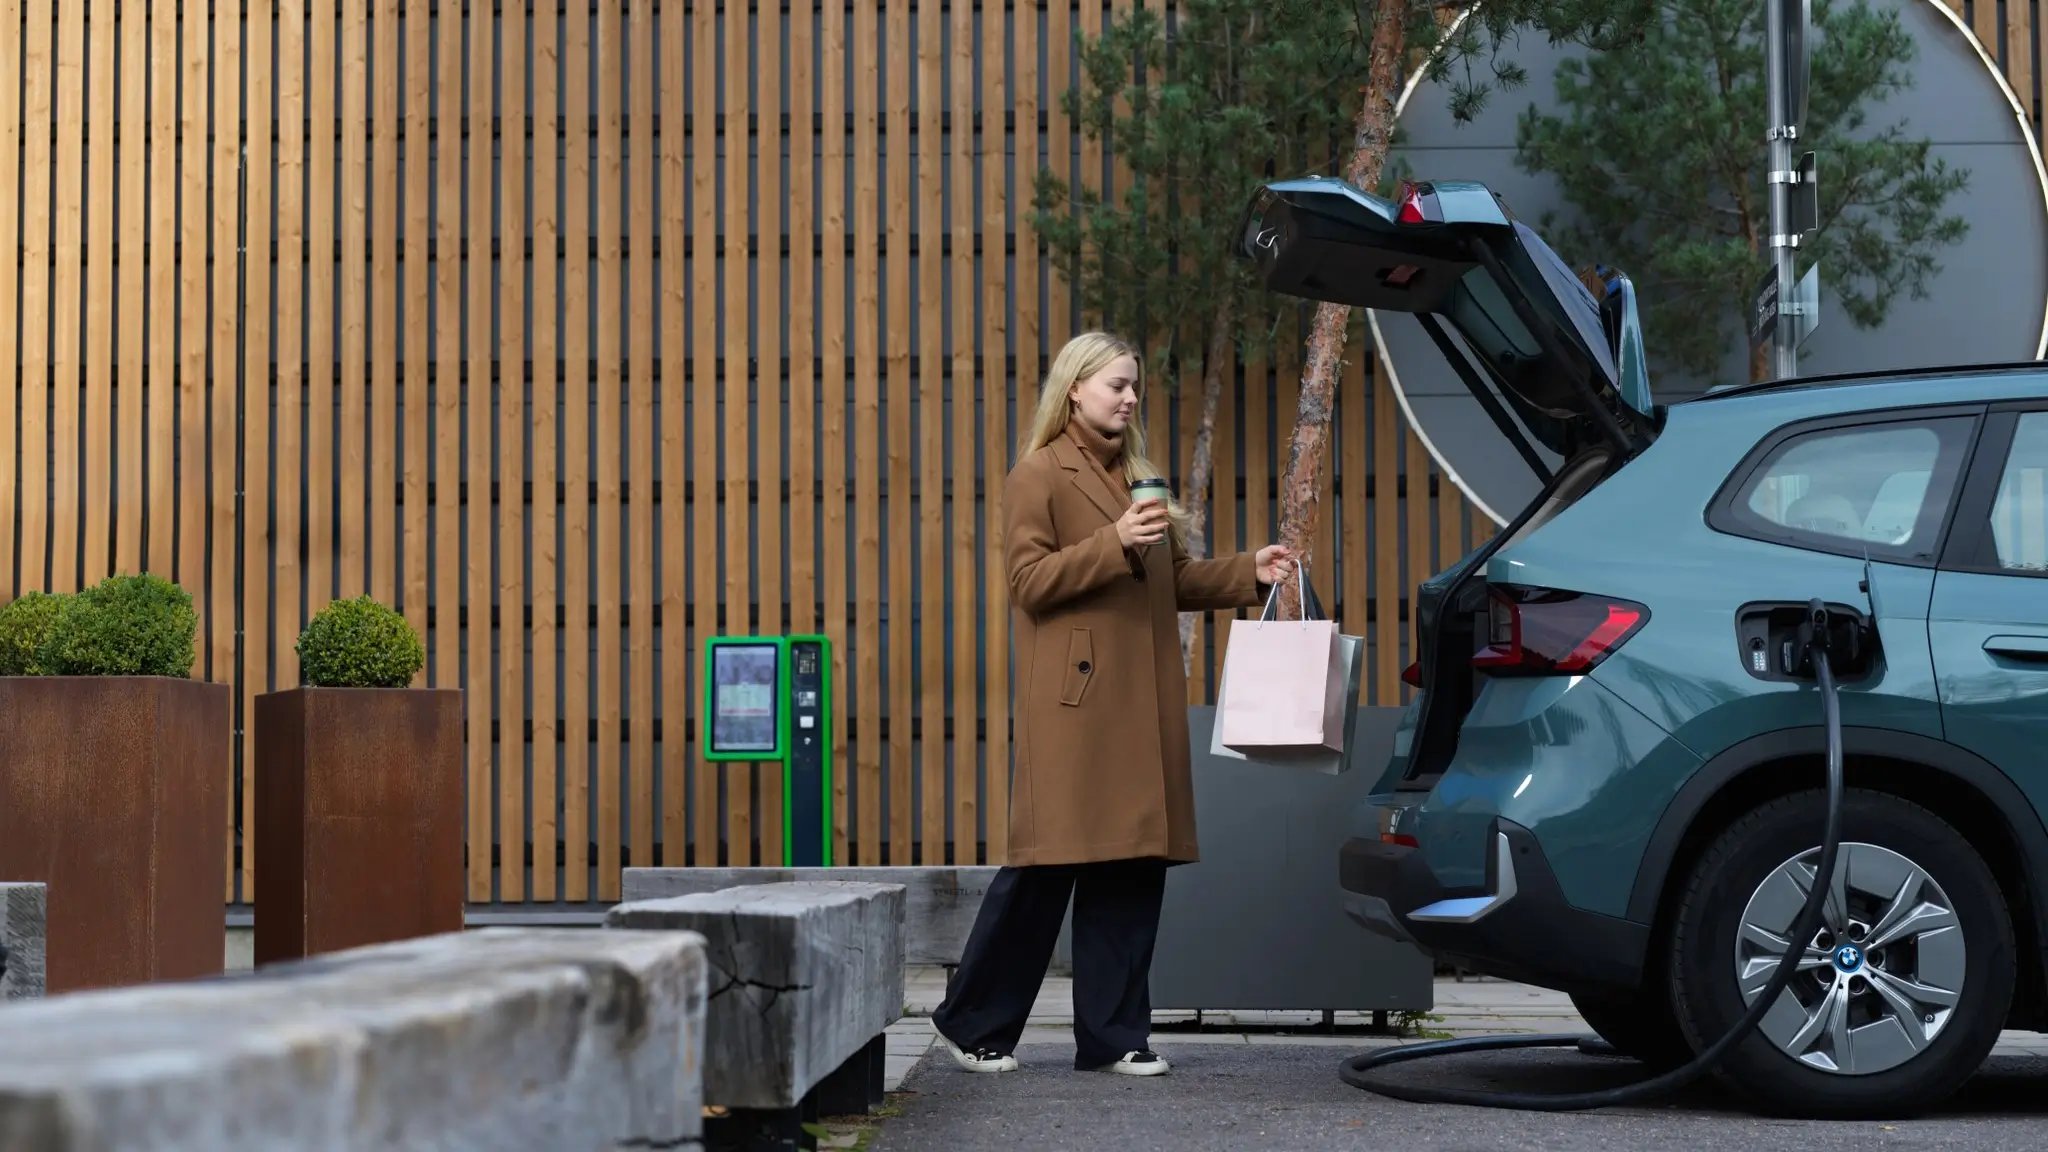 Junge Frau legt Einkaufstüten in den Kofferraum ihres E-Autos, das gerade an einer Ladestation lädt